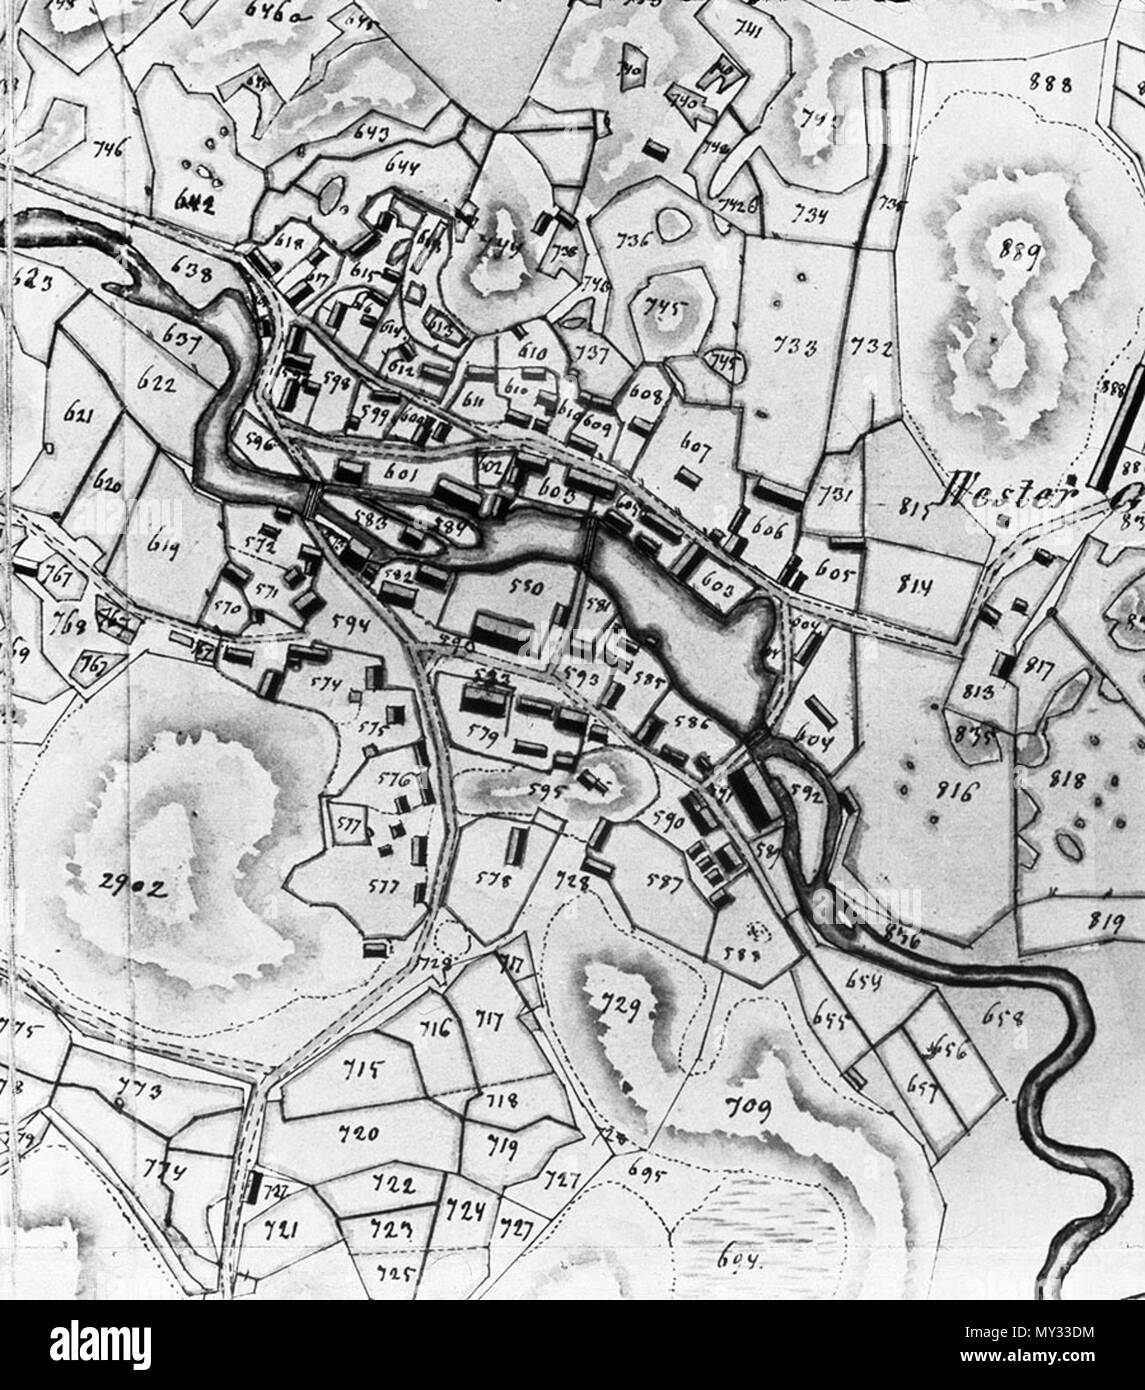 . Karta över Wira bruk, upprättad av Viktor Dahlgren 1841. 1841. Viktor Dahlgren 566 Wira karta Dahlgren1841 Stock Photo